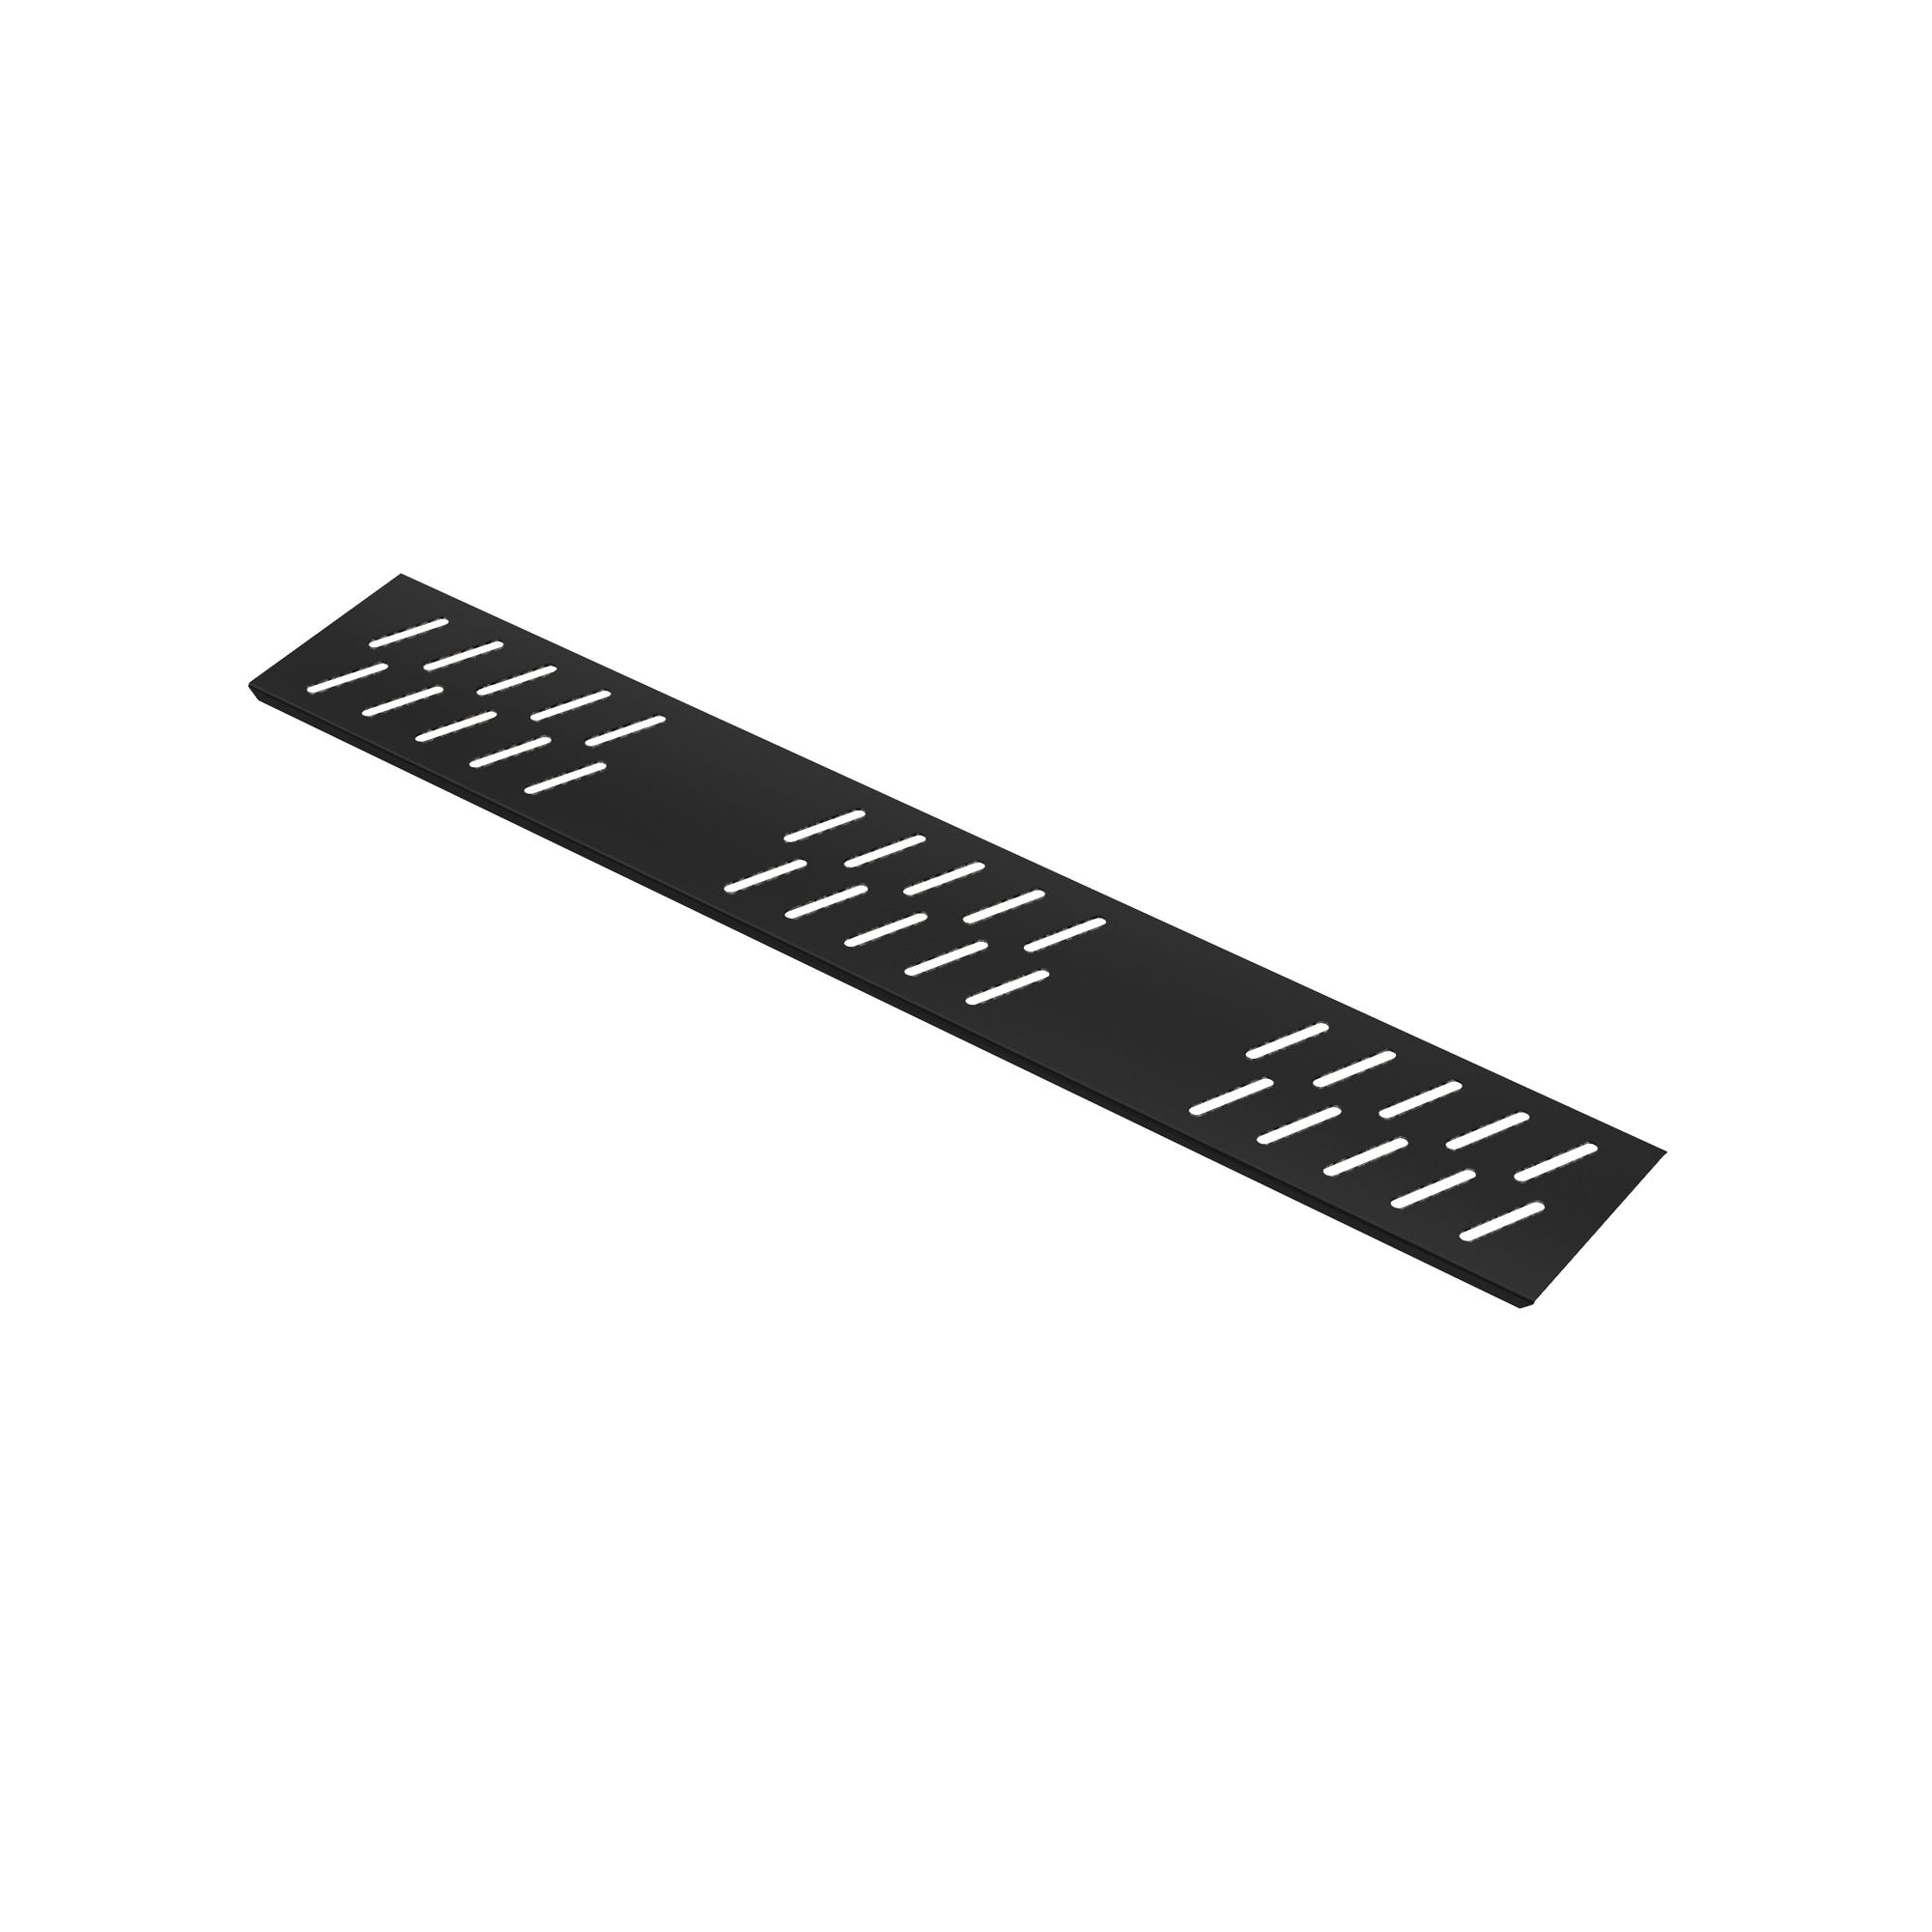 Grille linéaire en Aluminium finition Noir Mat pour receveur - 79.5x11x0.2cm - GRID LINE BLACK MAT 2